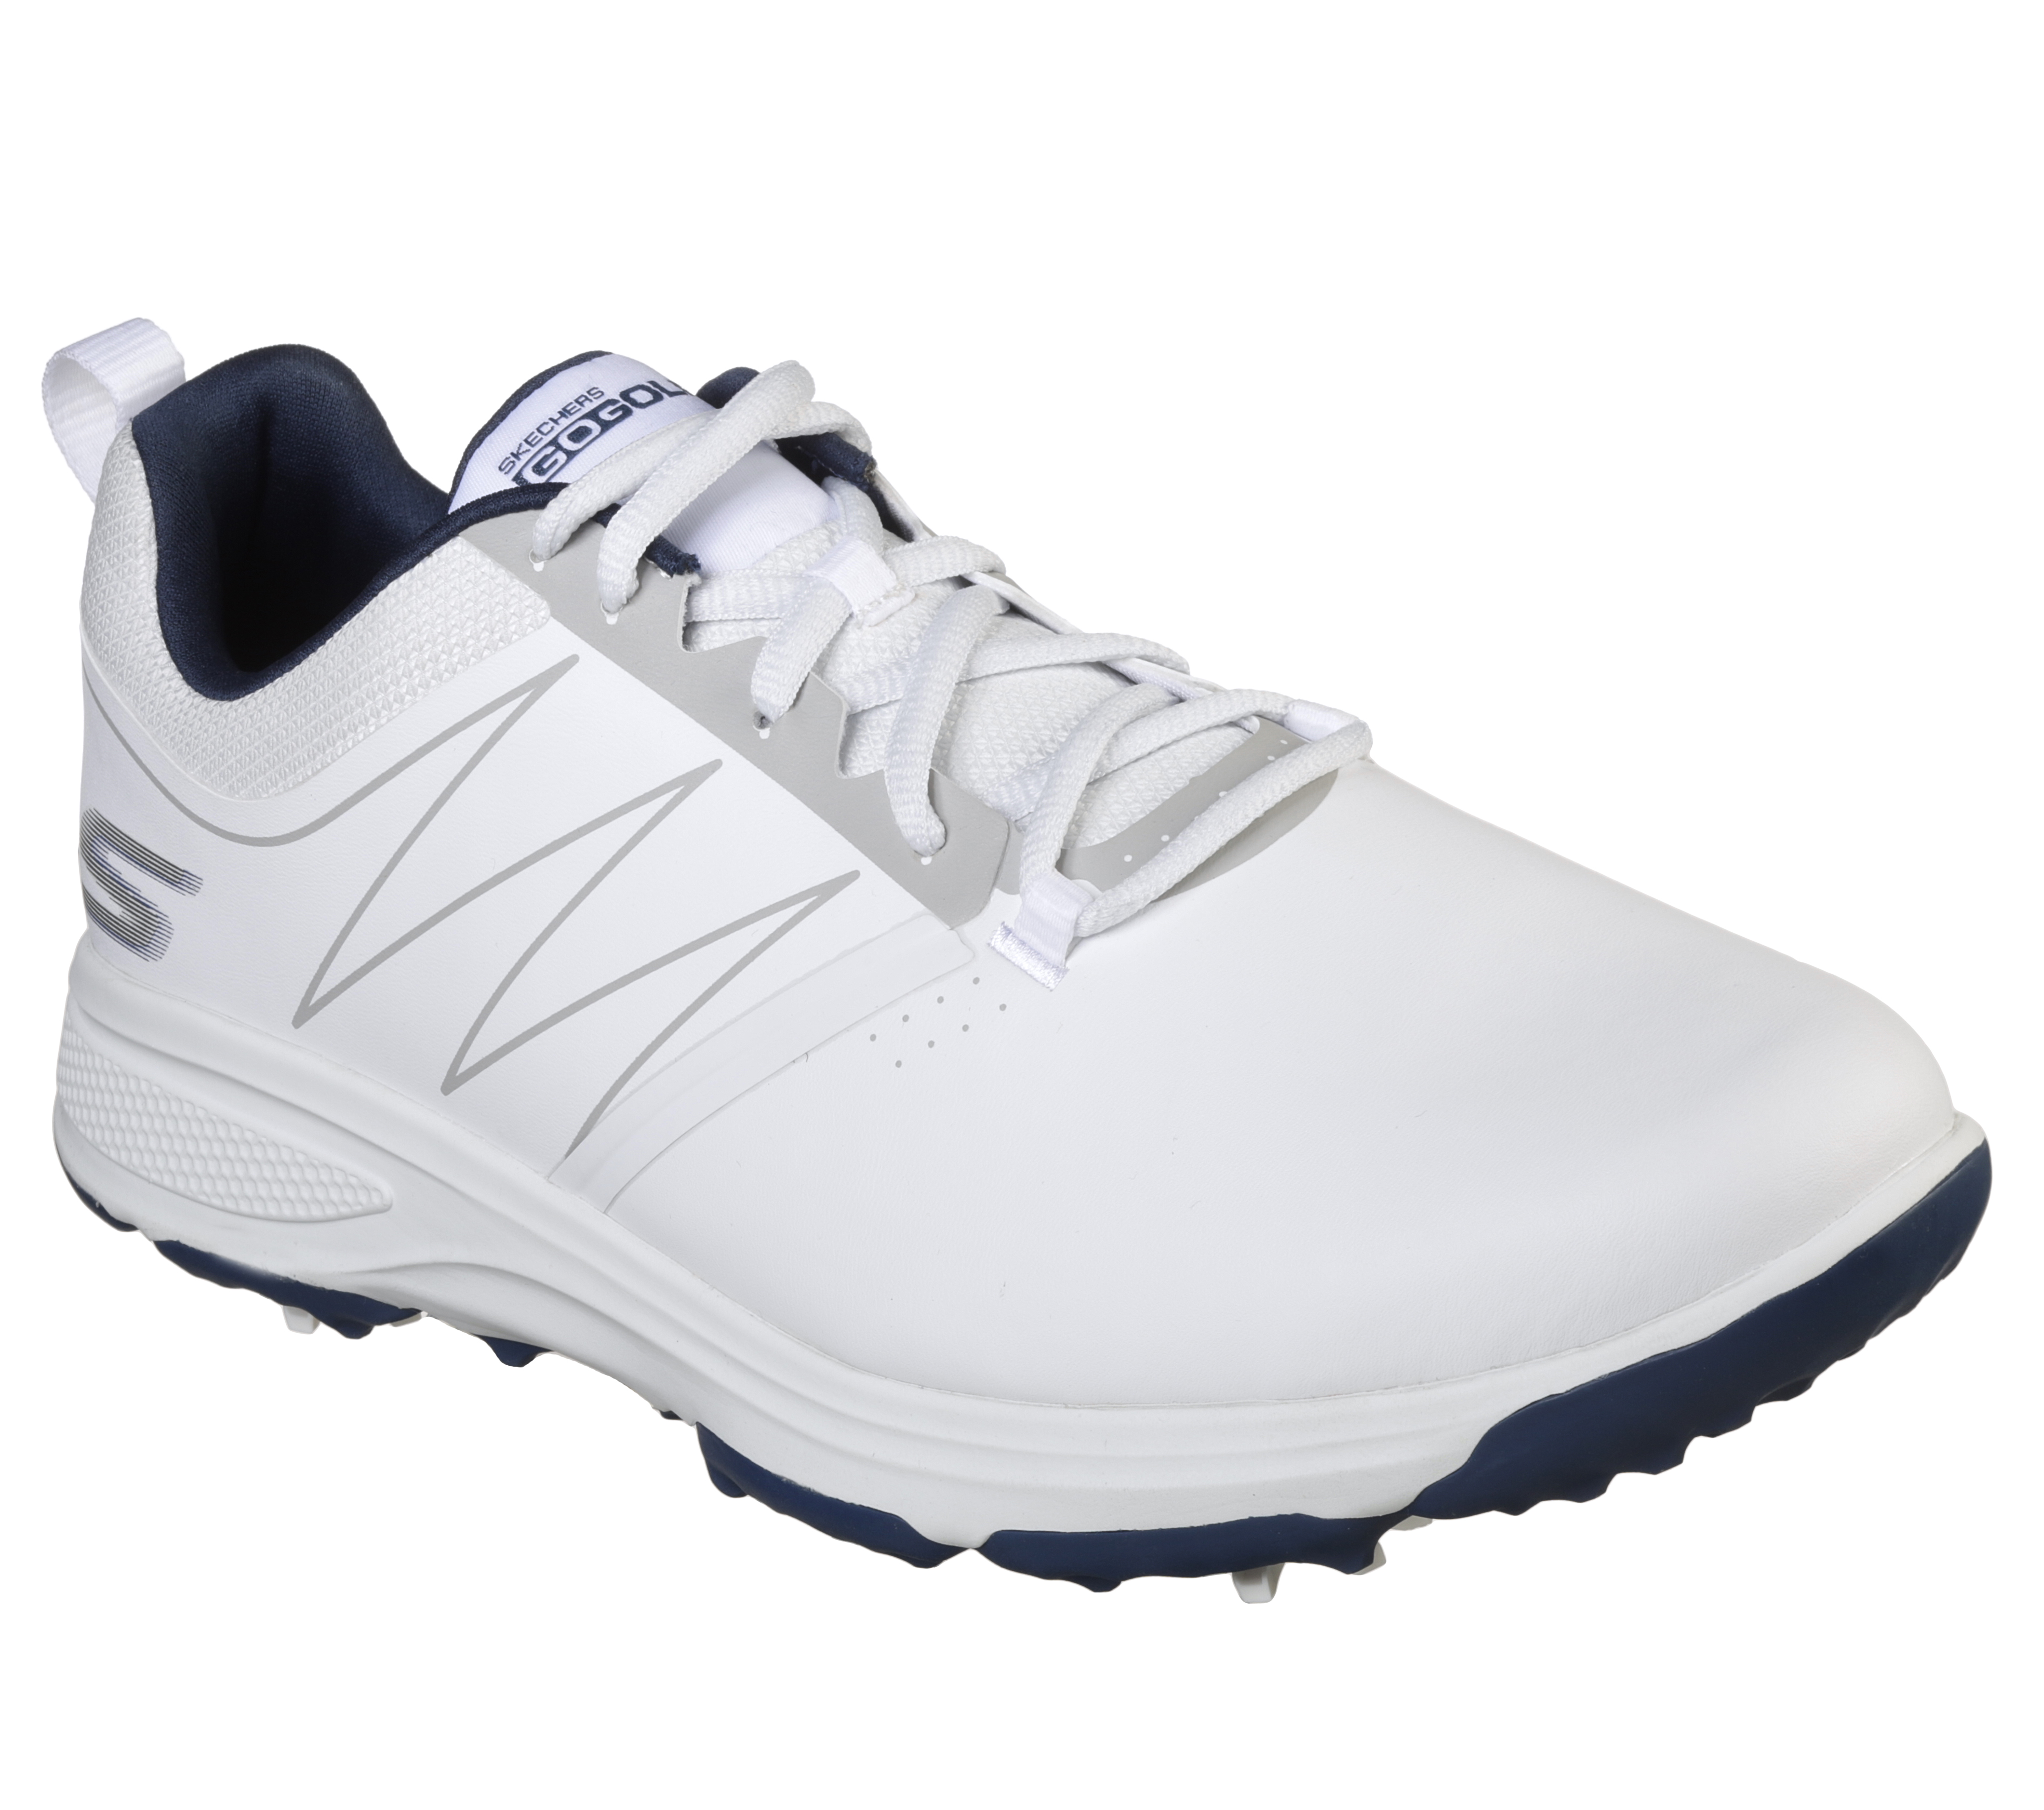 skechers men's torque waterproof golf shoe